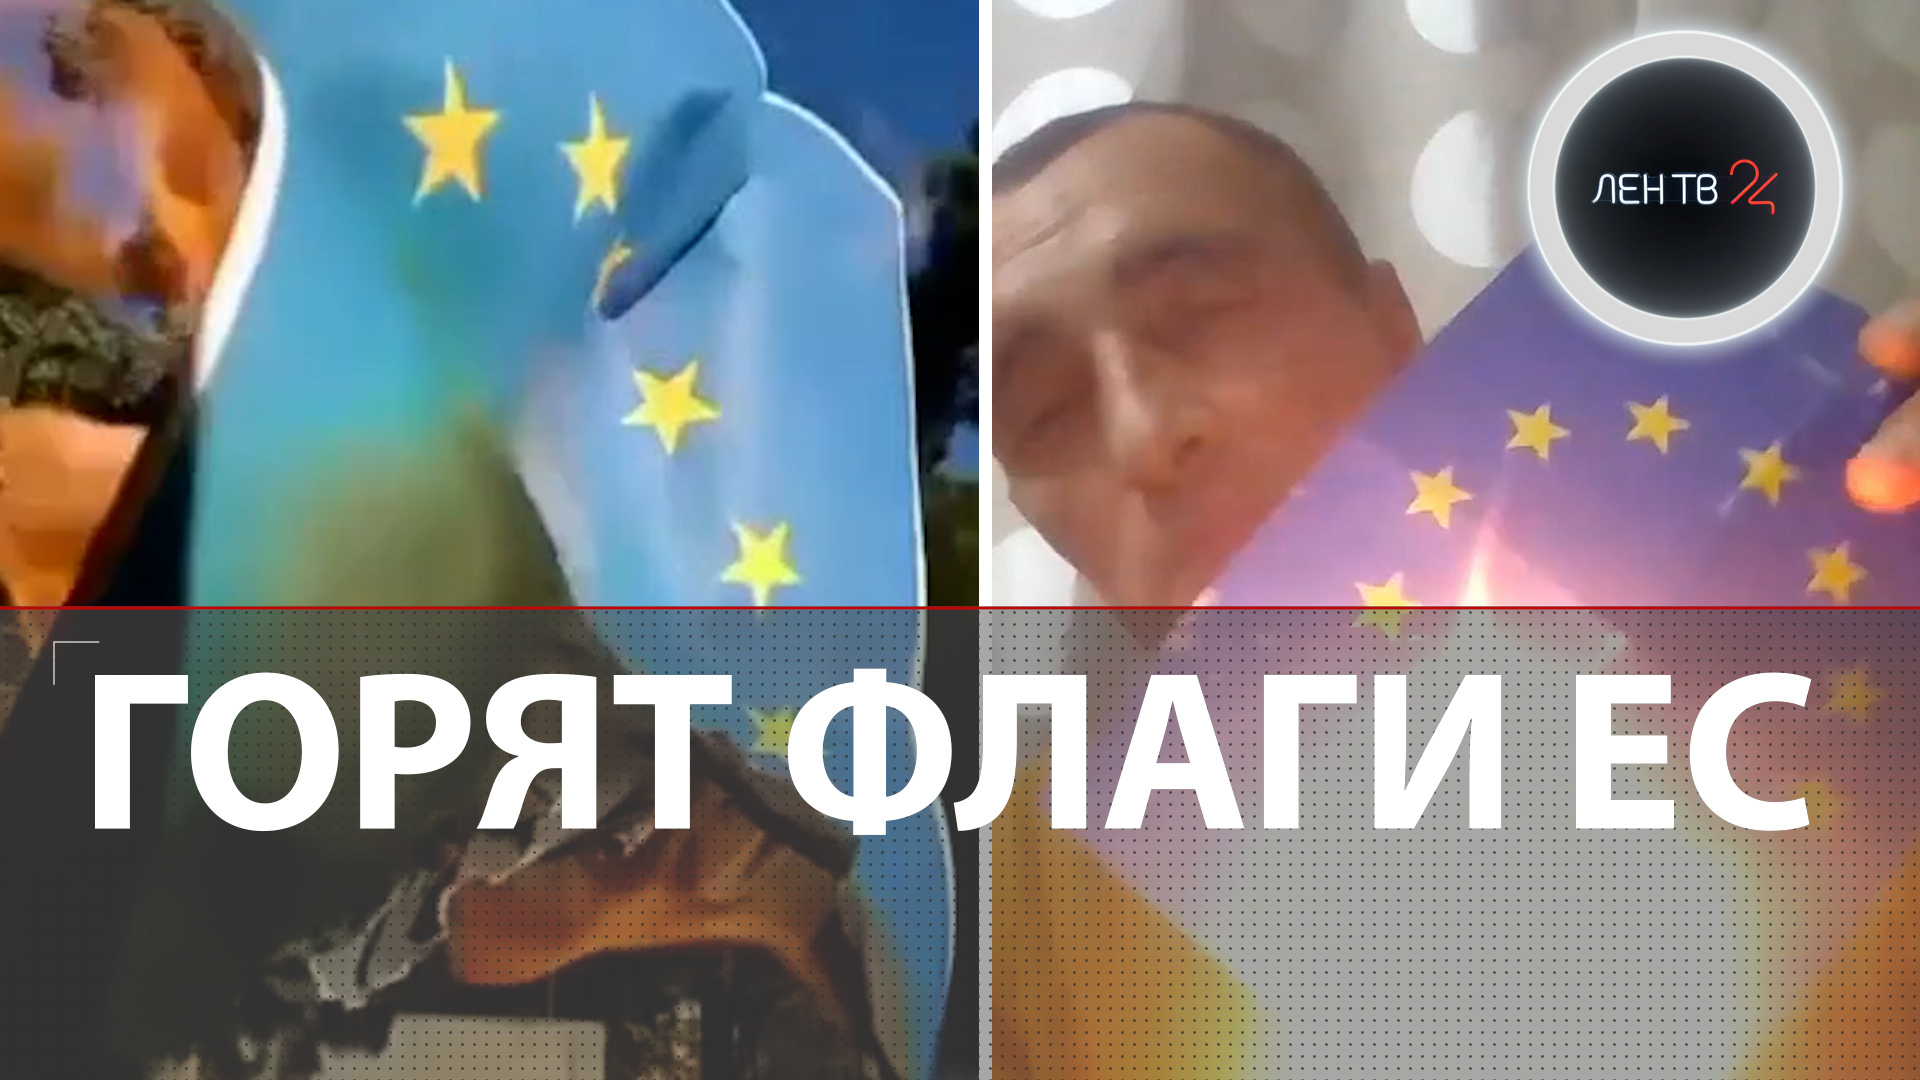 В Грузии жгут флаги Евросоюза | Акция антиевропейского движения | Активисту грозит тюрьма